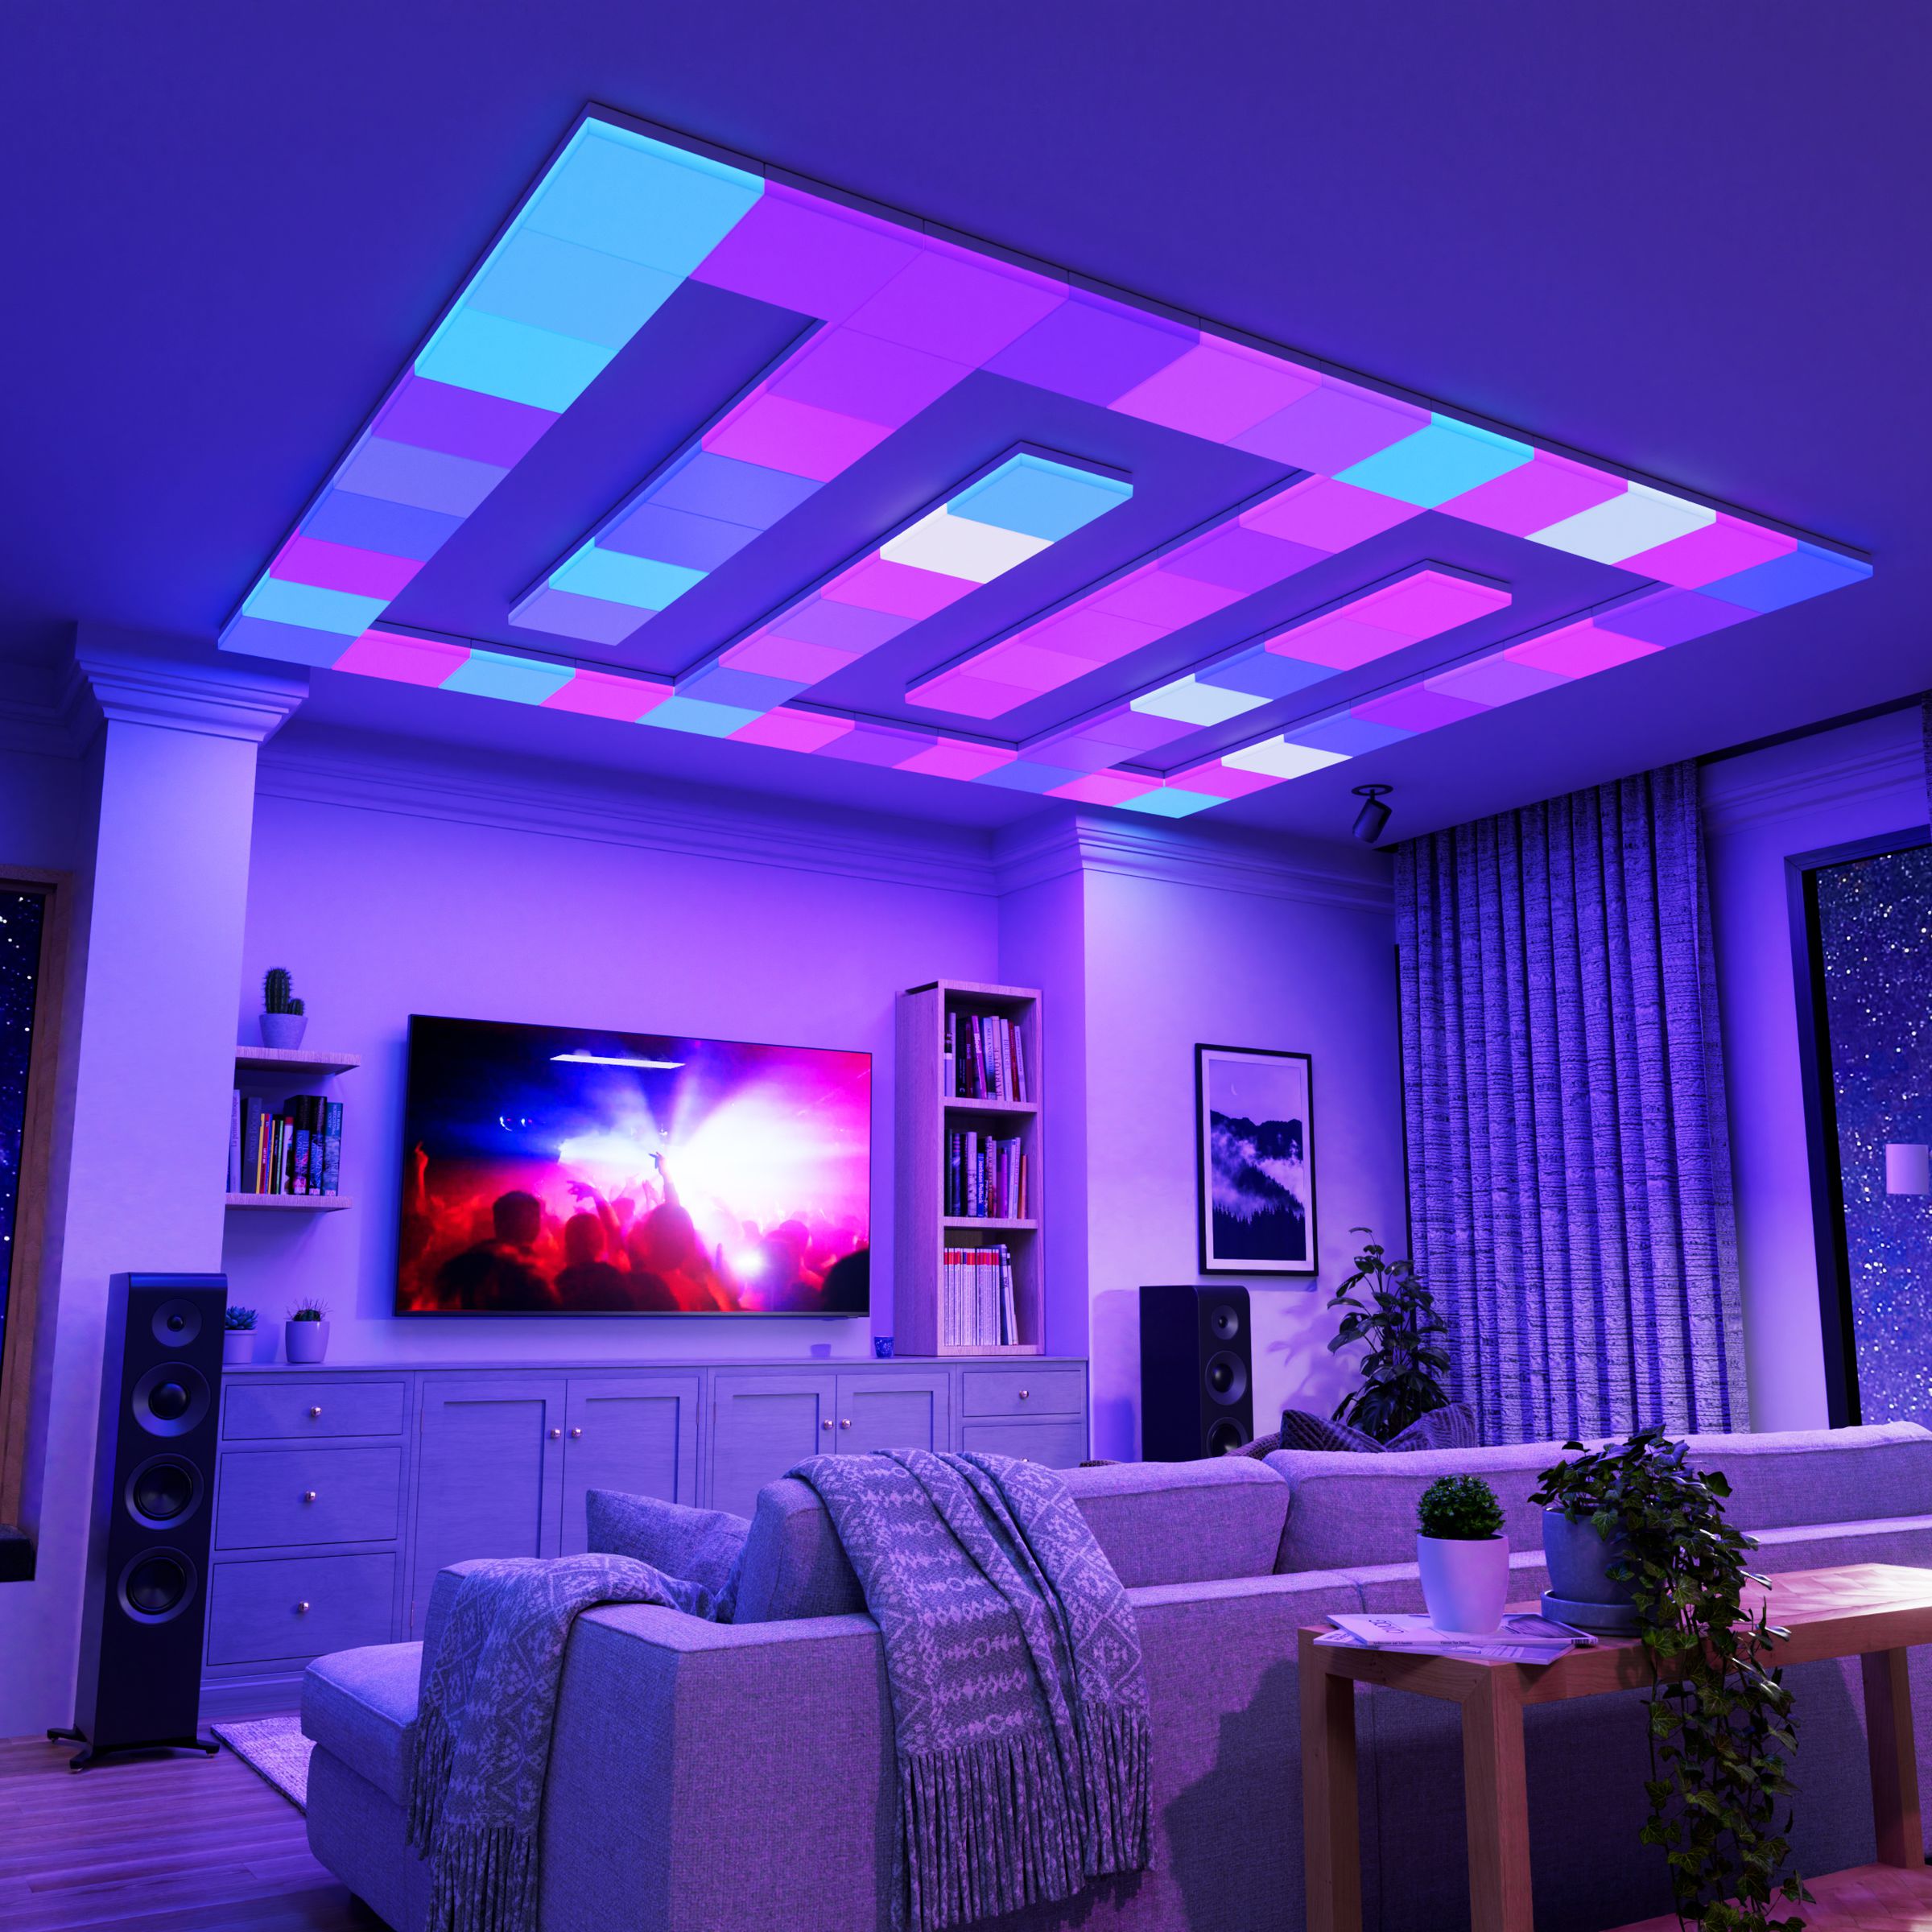 Nanoleaf’s smart LED ceiling lights lighting up a room with blue and purple lights.